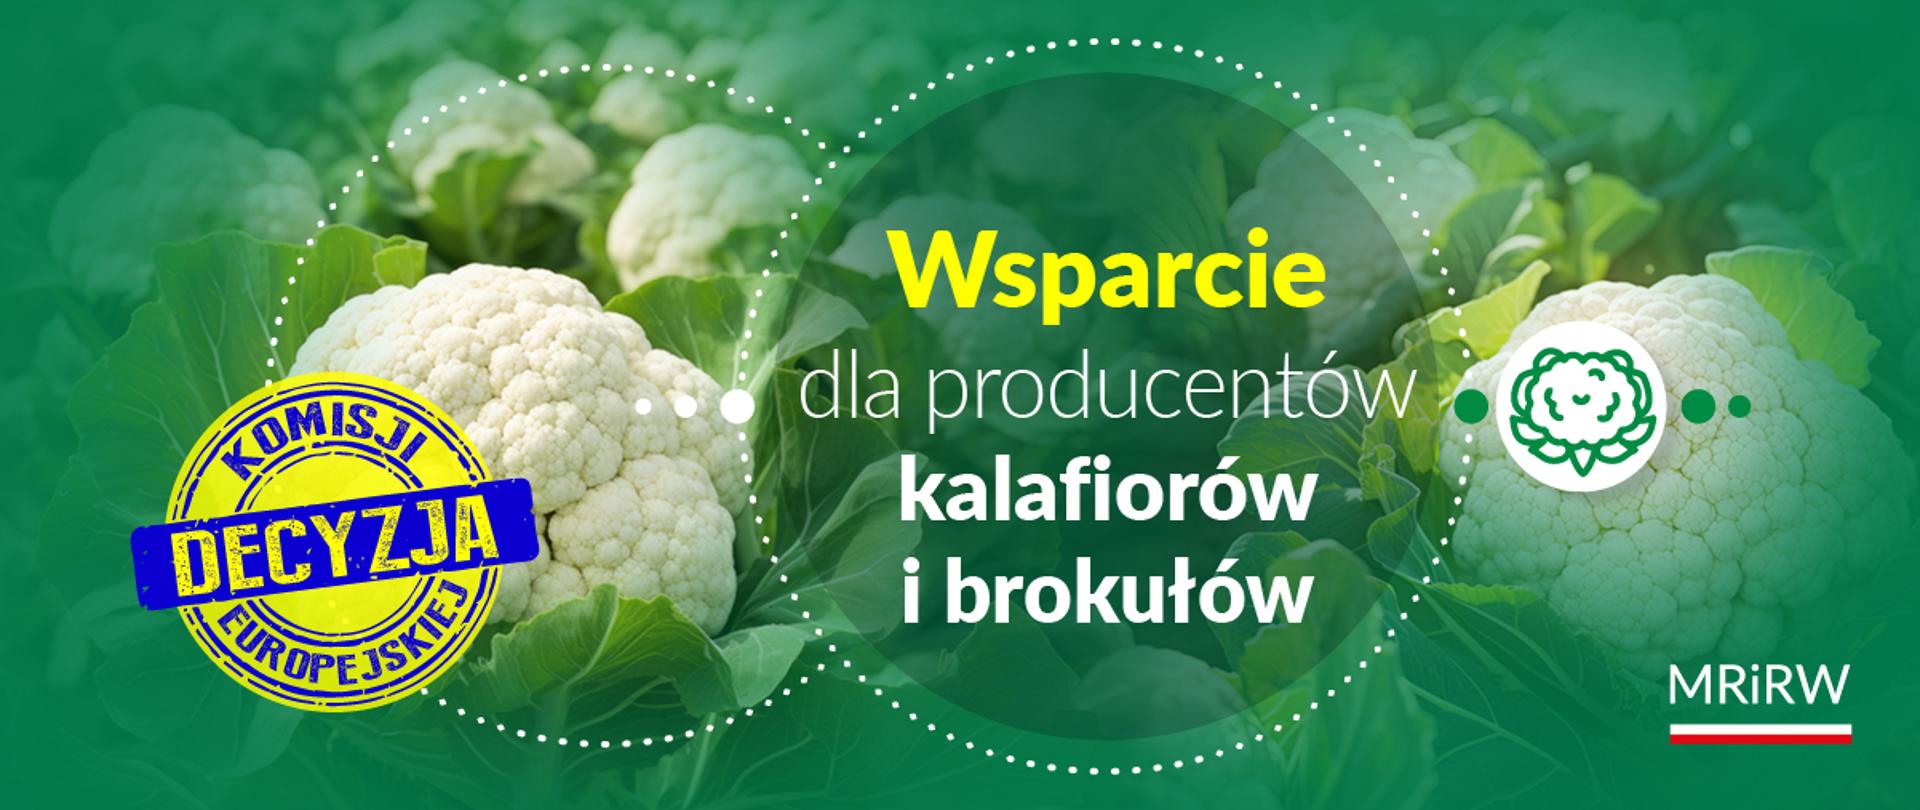 Wsparcie dla producentów kalafiorów i brokułów – decyzja Komisji Europejskiej